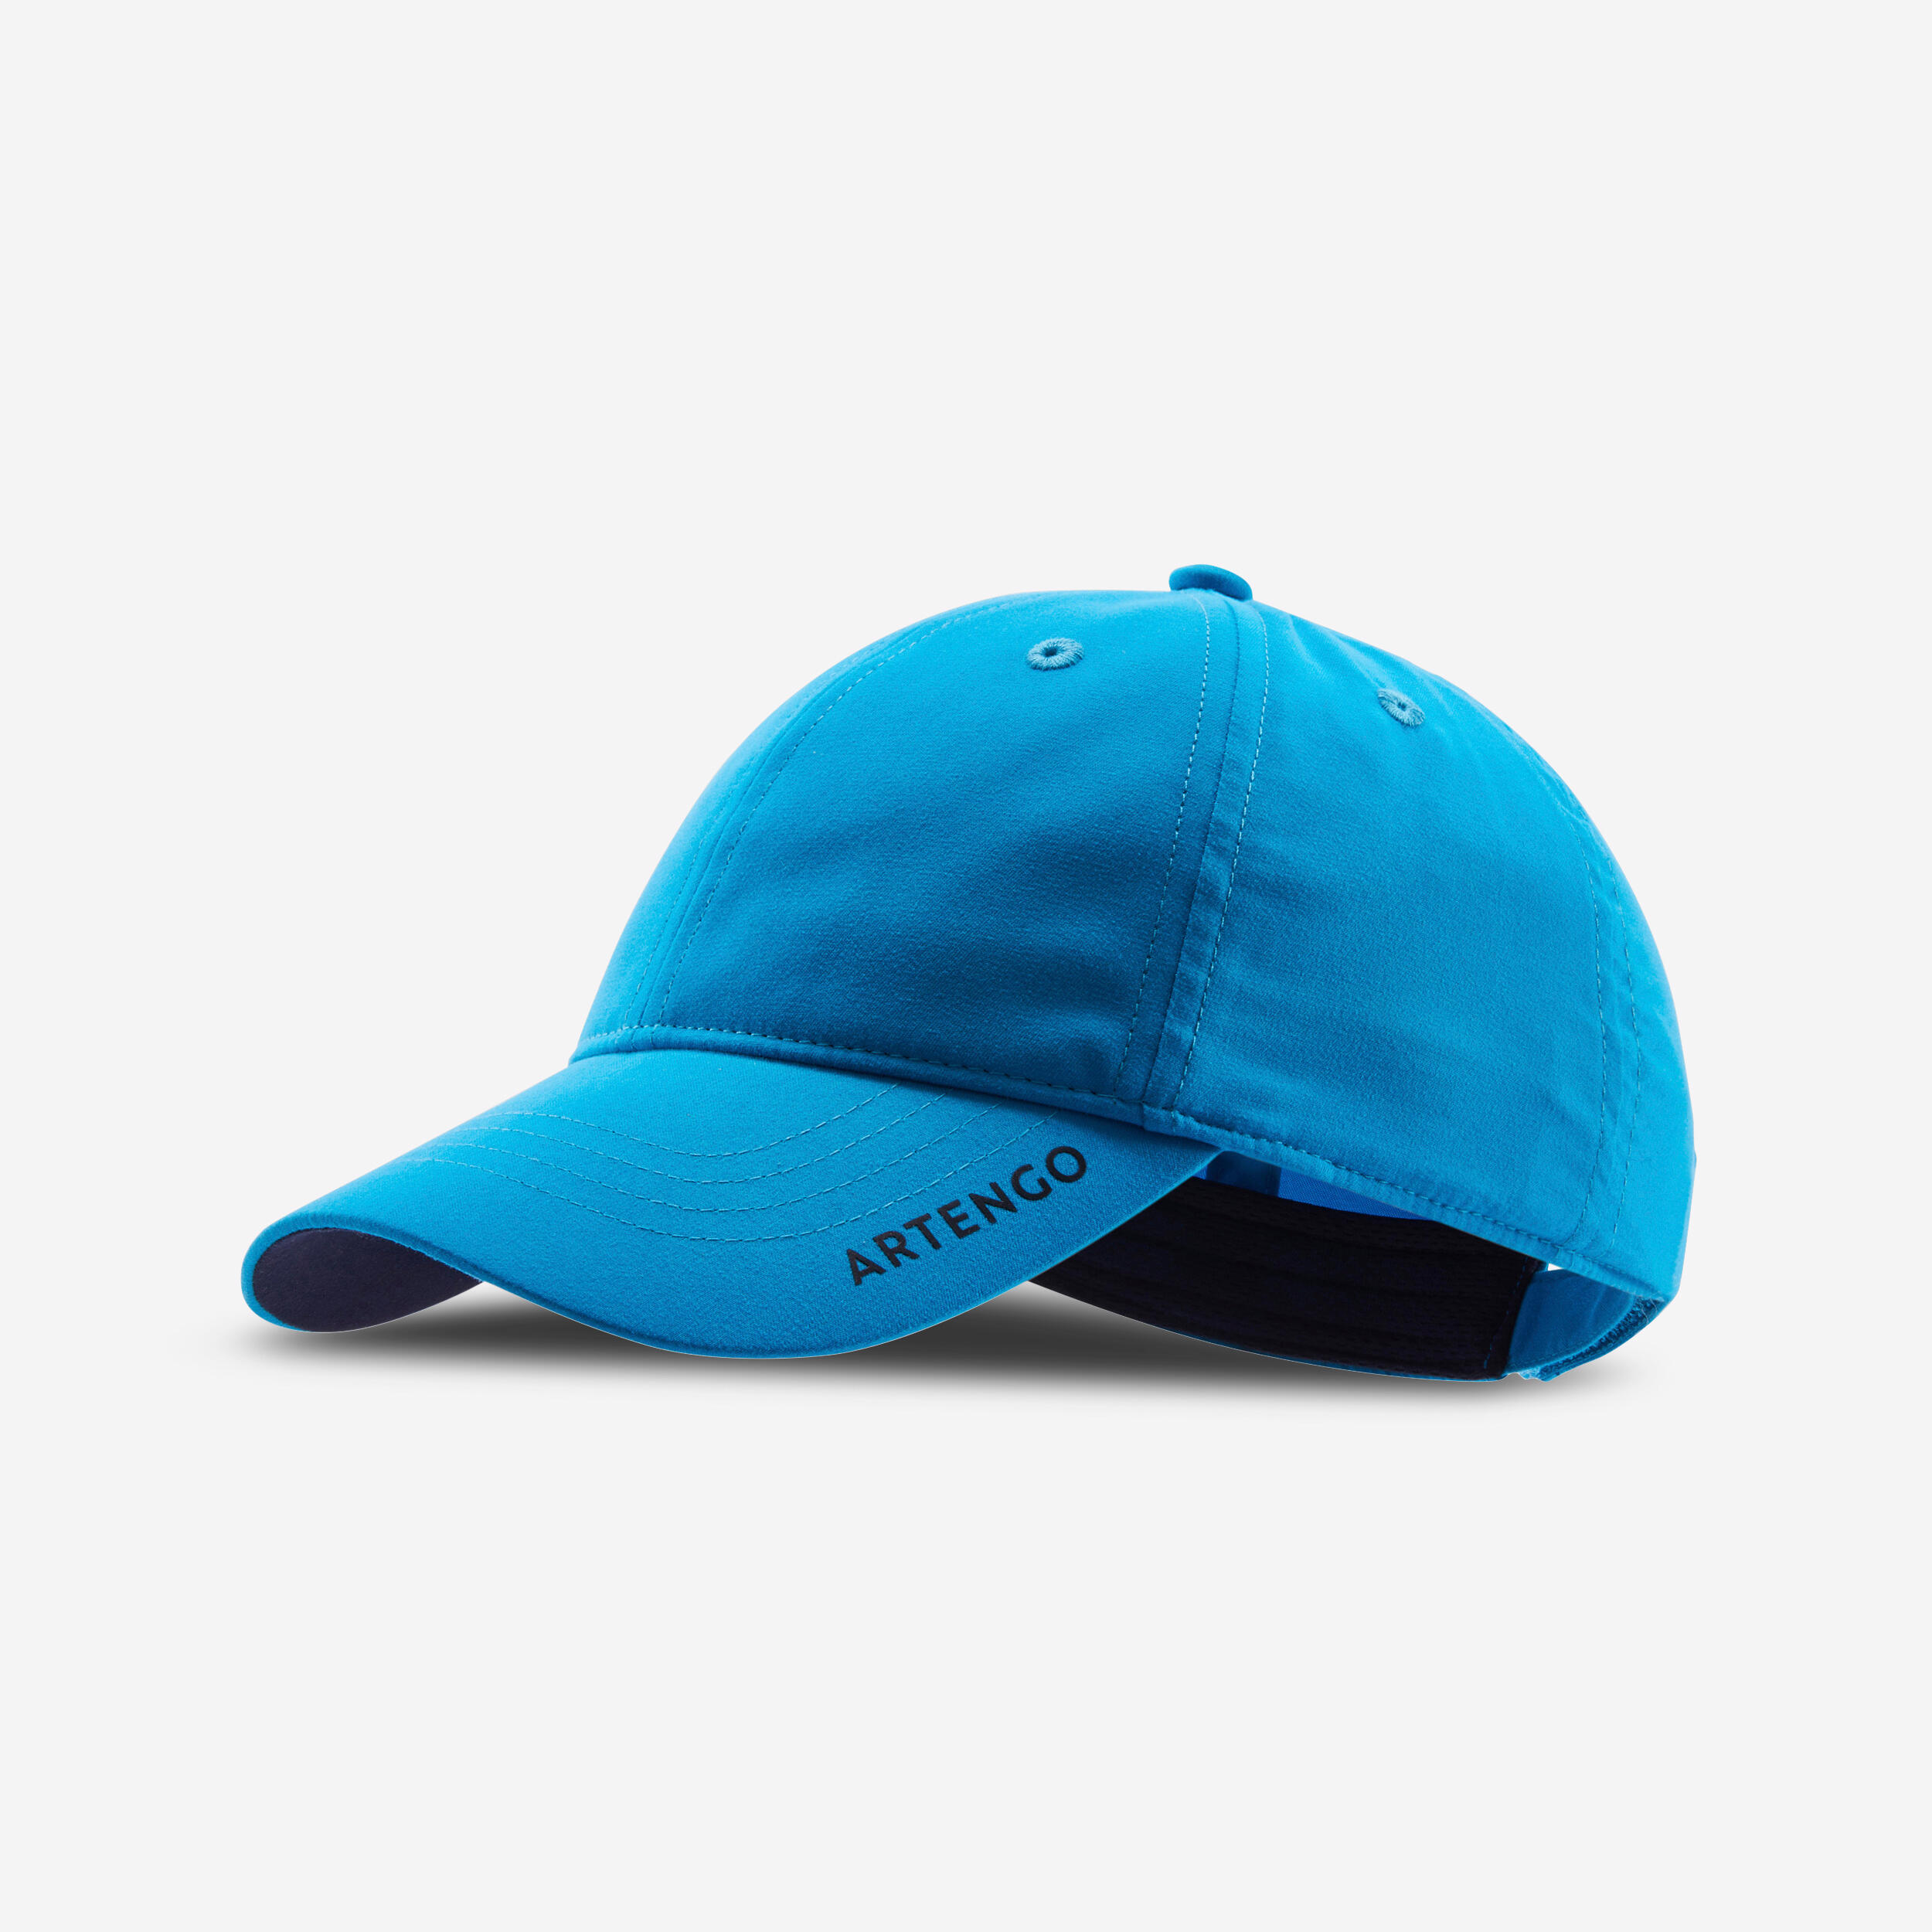 ARTENGO Tennis Cap TC 500 S54 - Turquoise/Blue